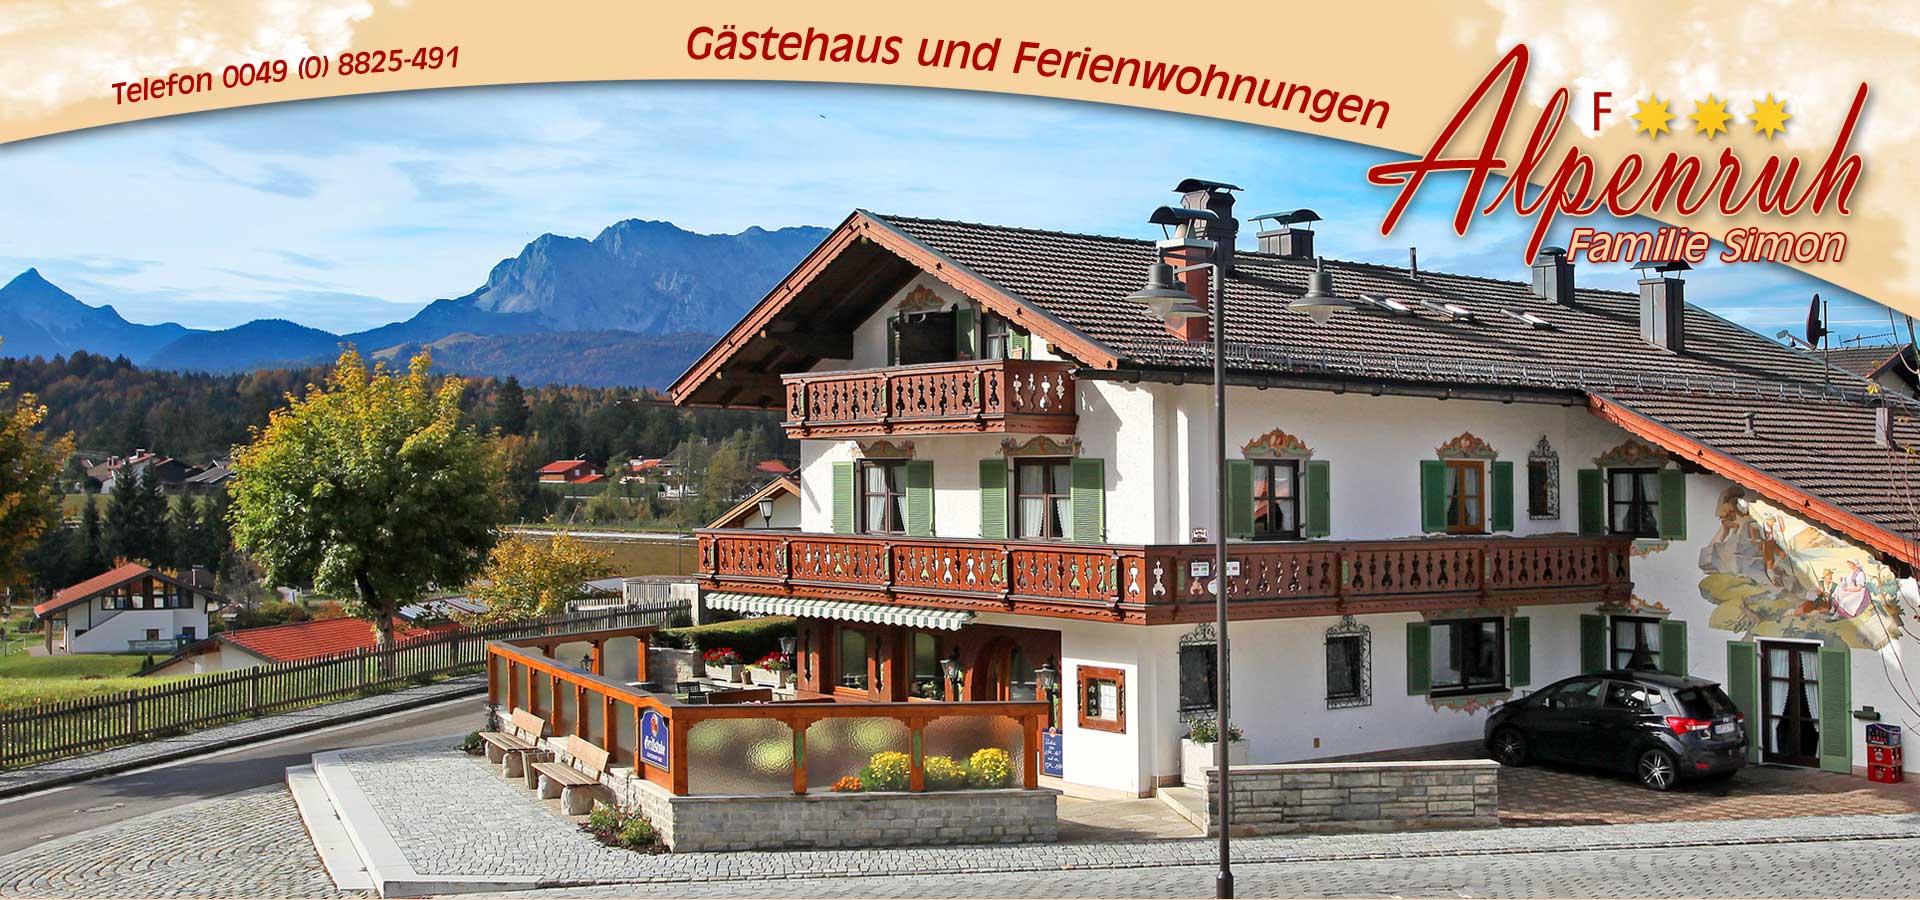 Gästehaus und Ferienwohnungen Alpenruh - Krün